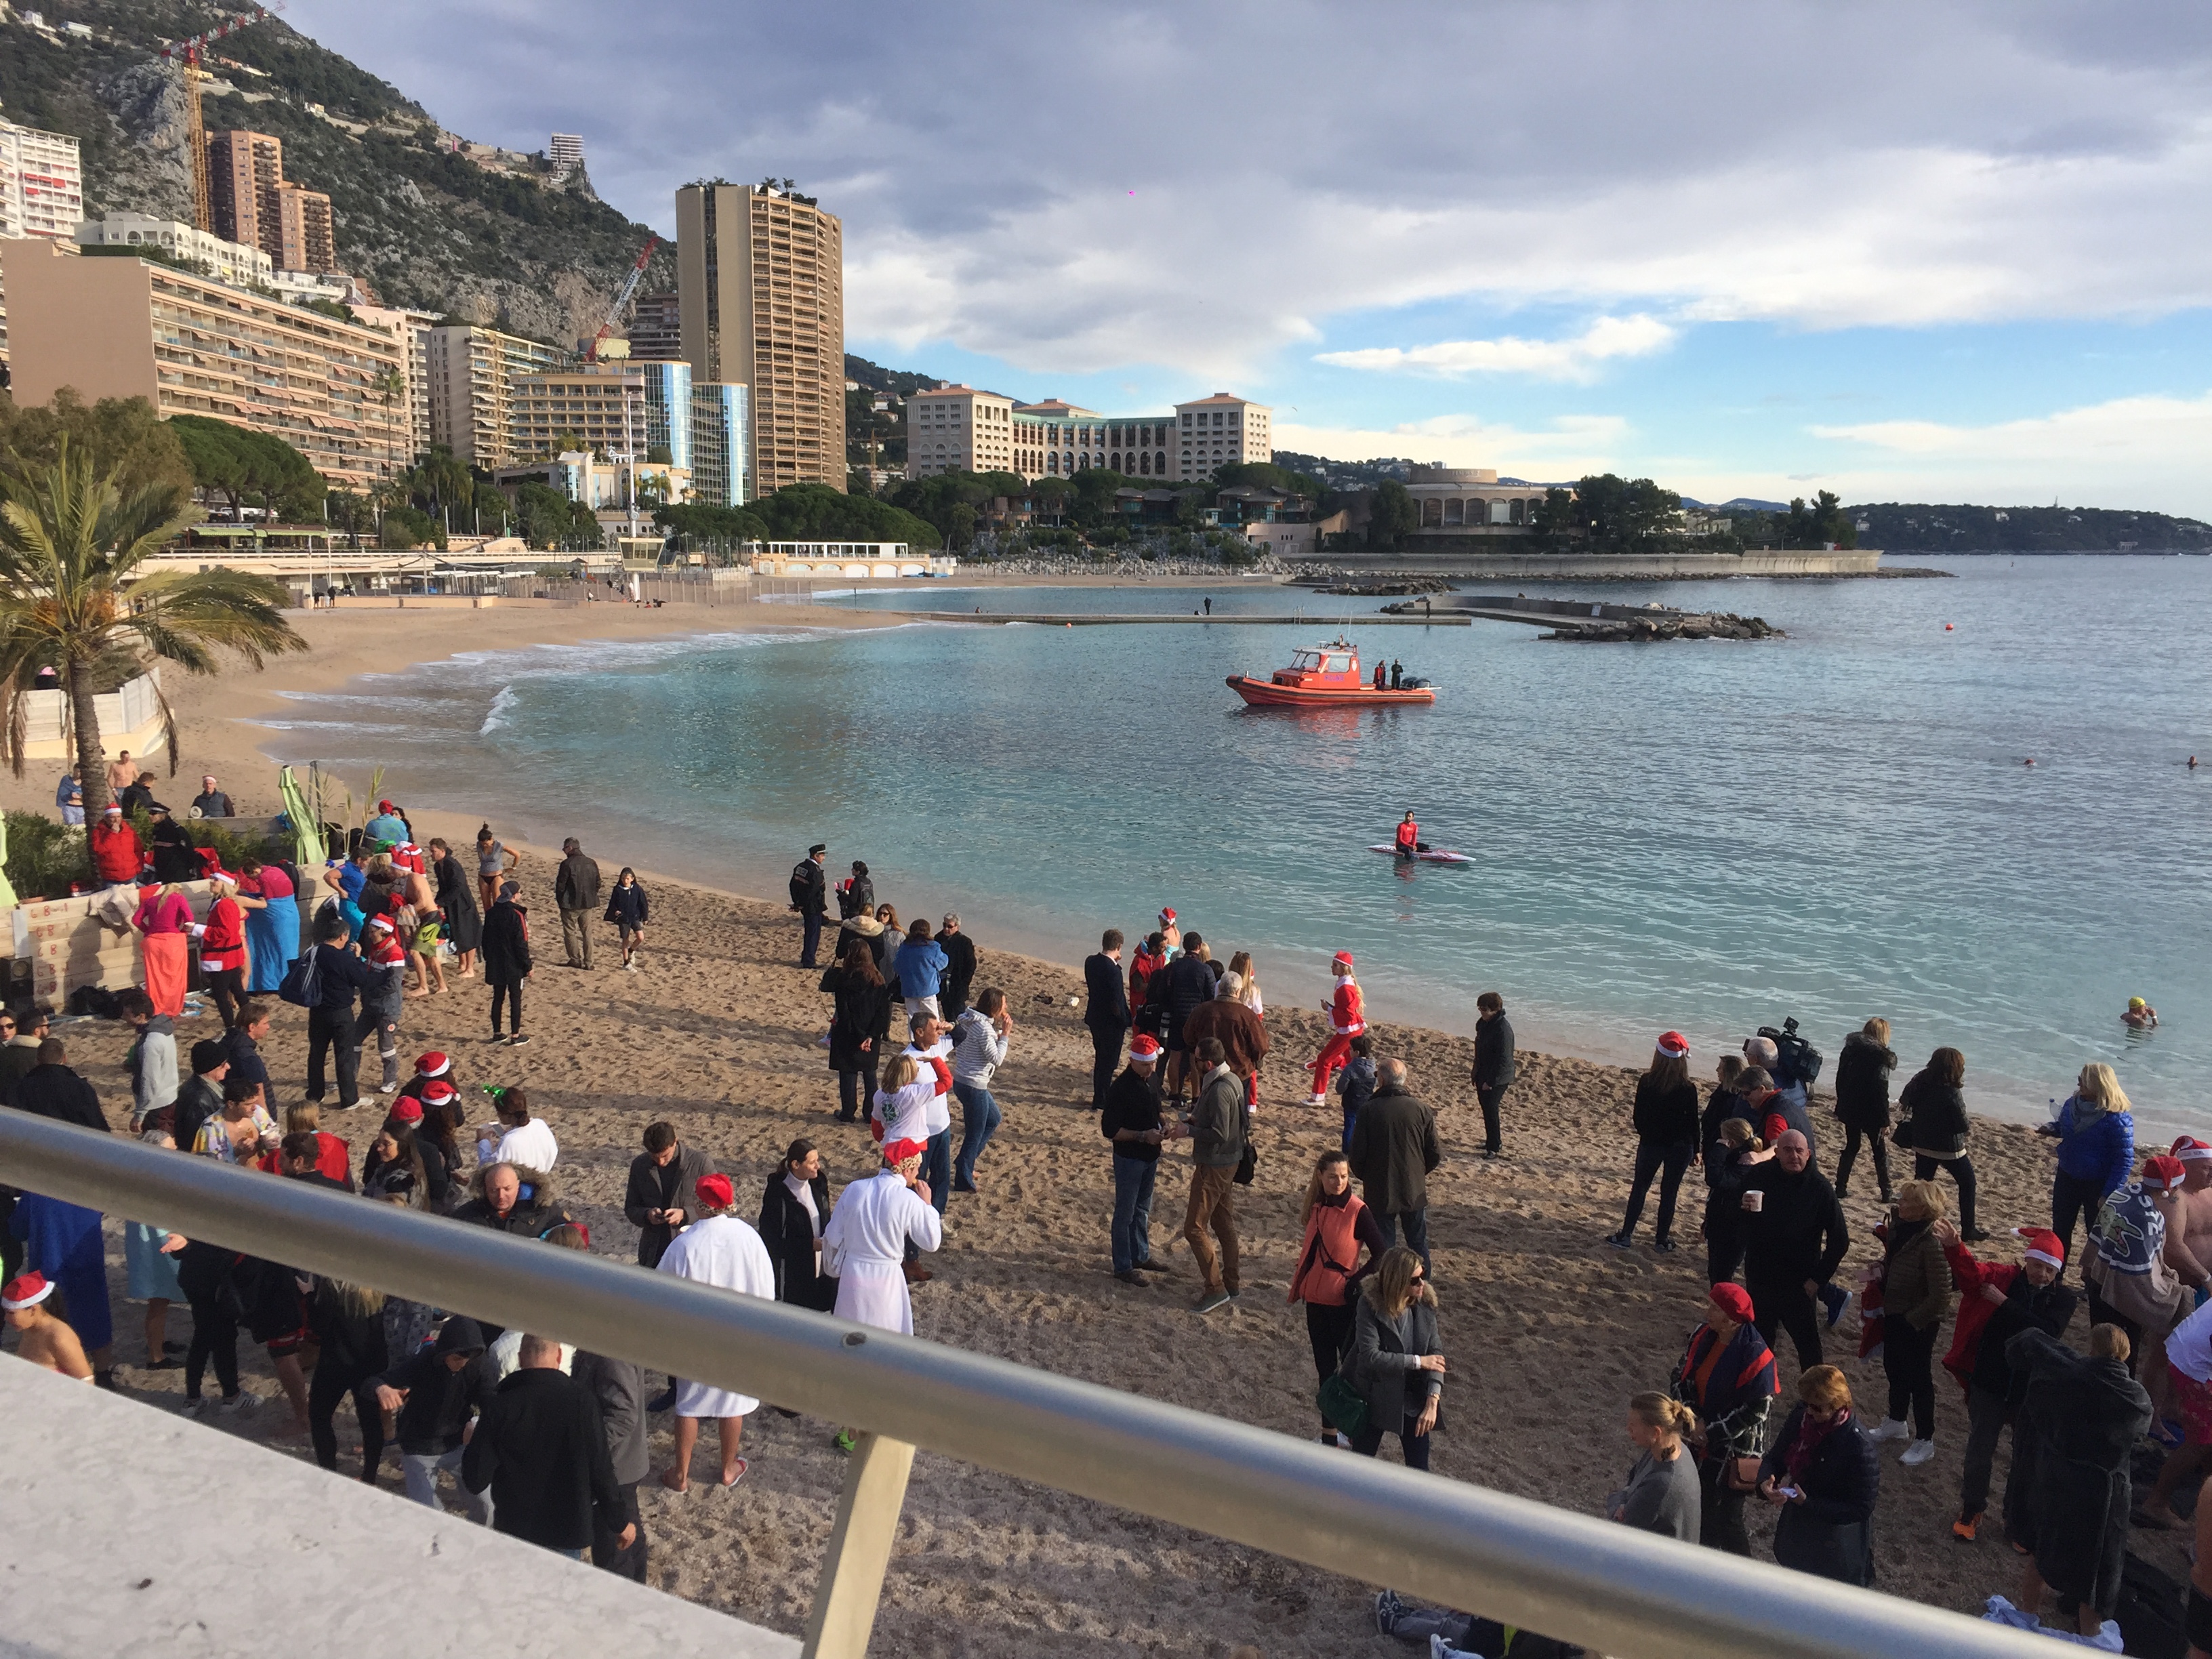 Il Bagno Di Natale del 2017 a Monte Carlo a favore dei bambini meno fortunati.